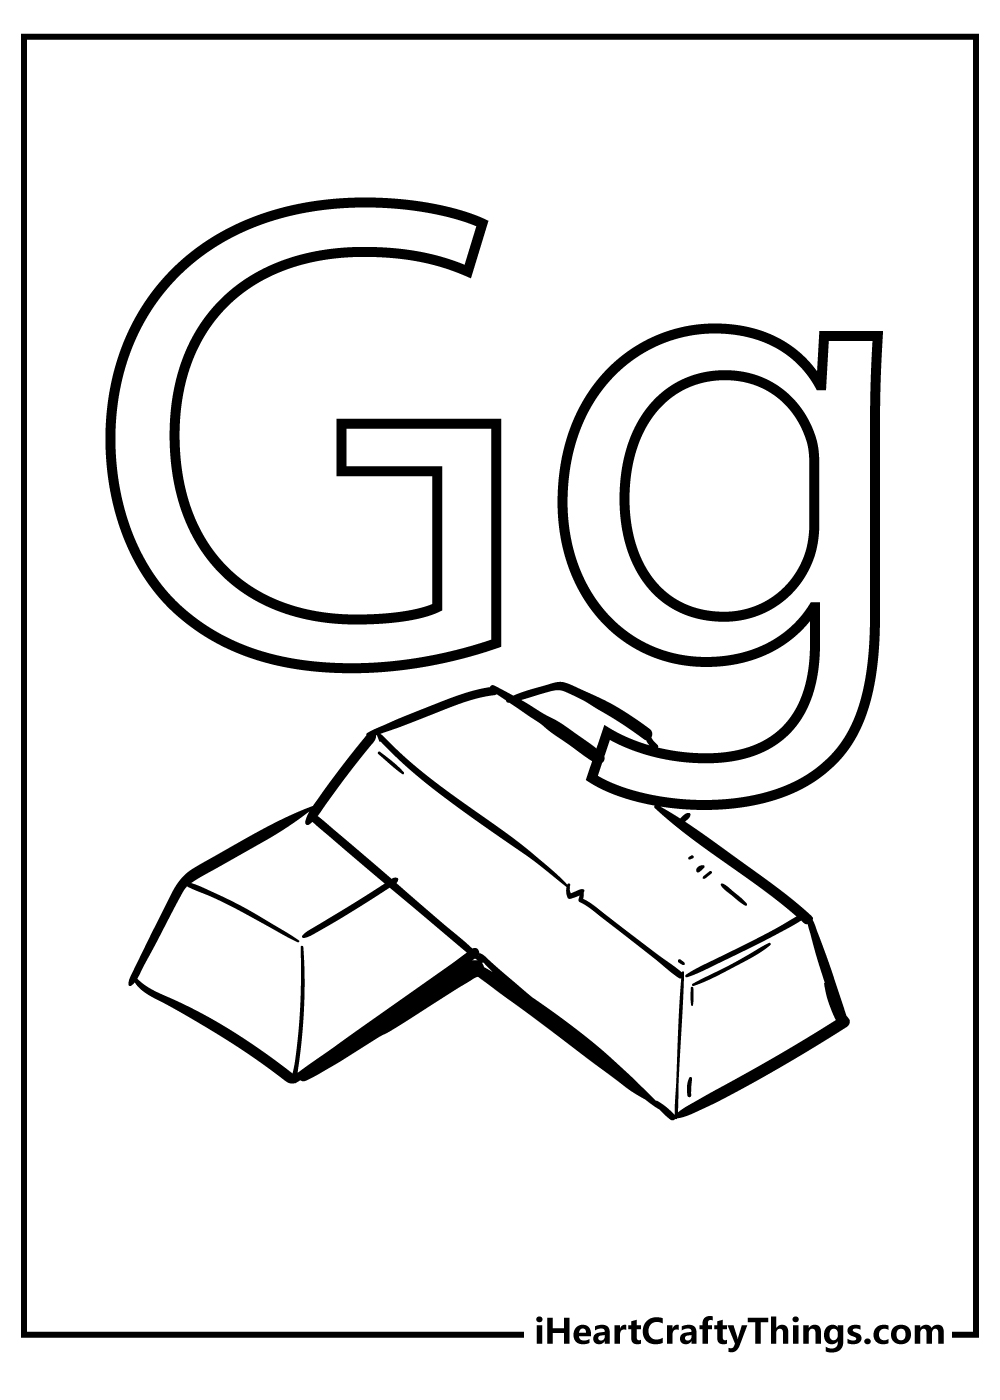 Letter G Coloring Original Sheet for children free download